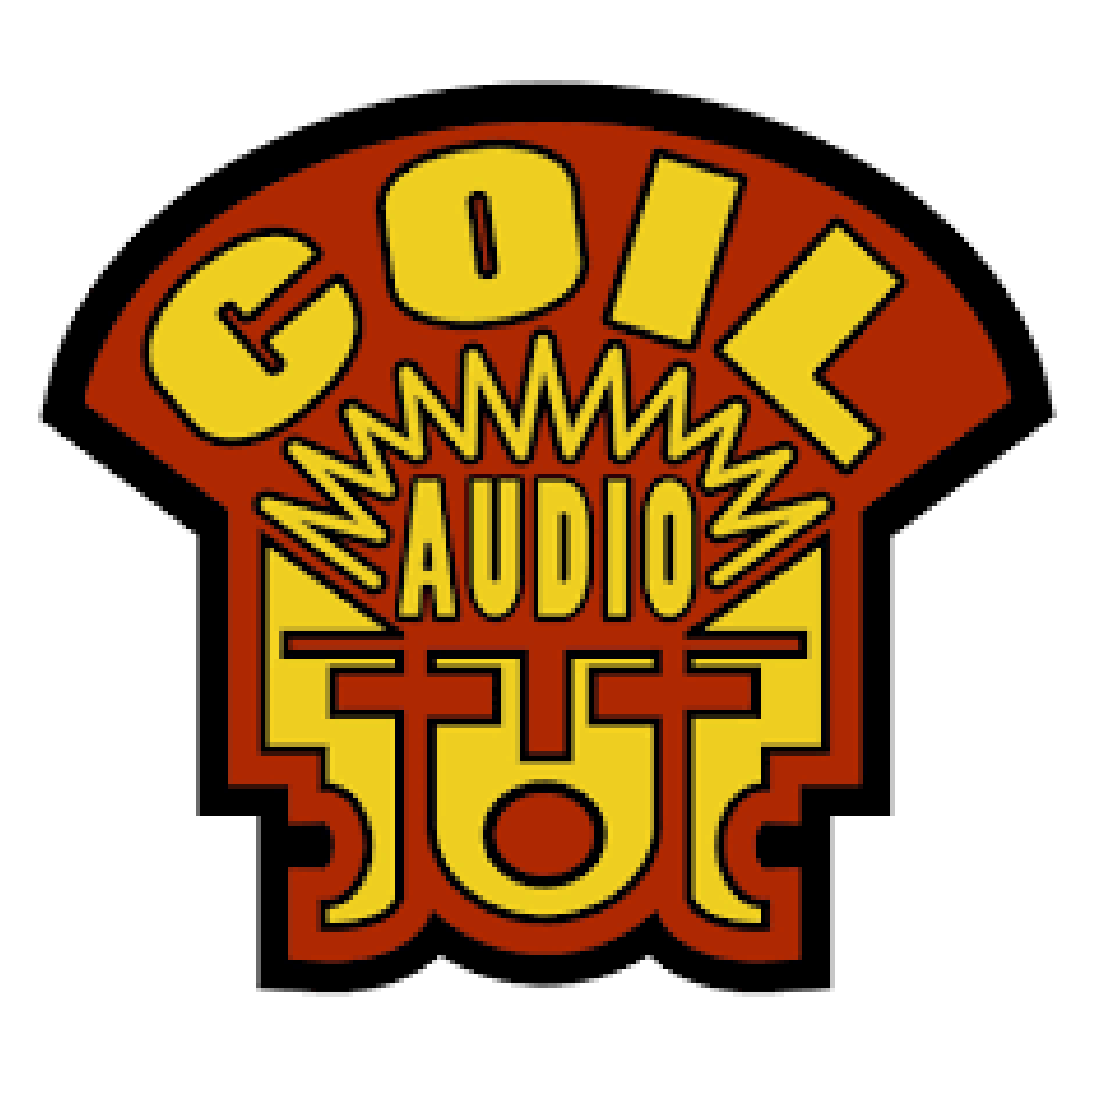 Coil Audio